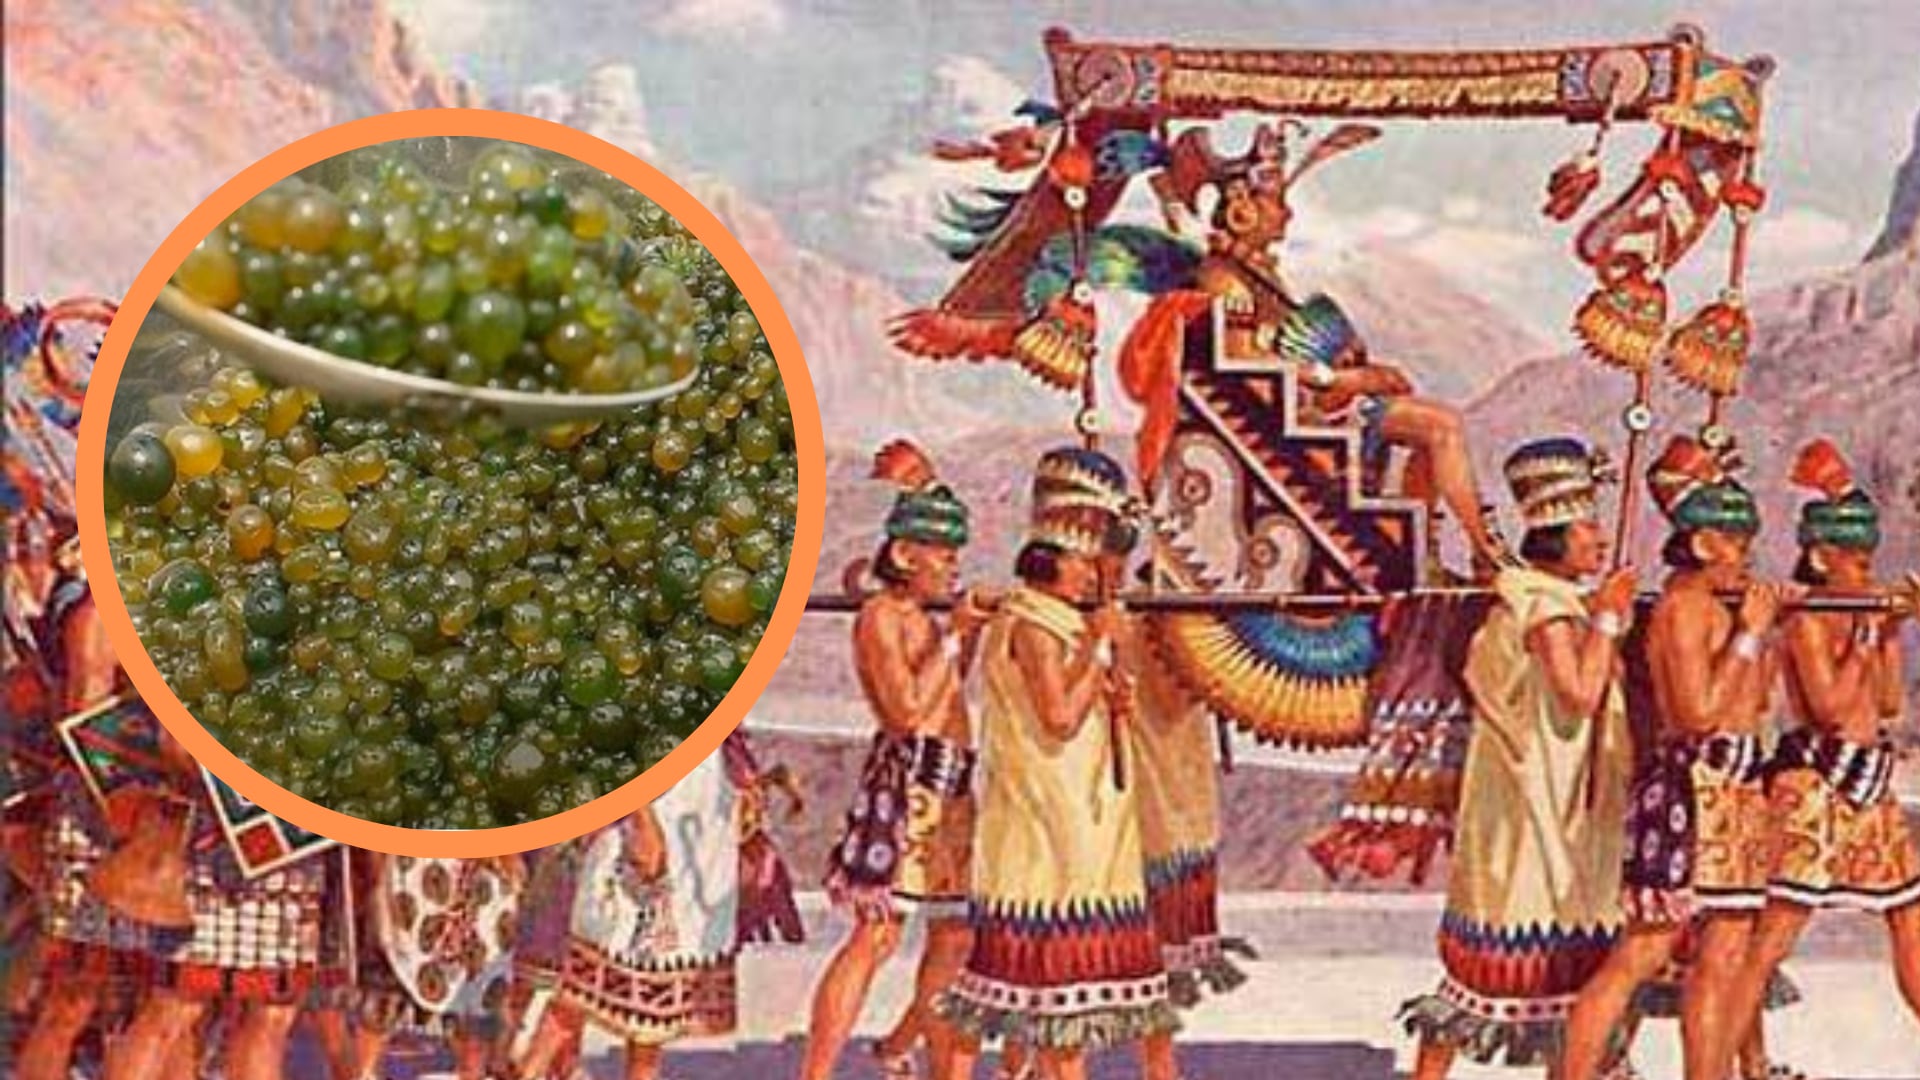 El cushuro, también llamado "caviar andino", es una cianobacteria que ha sido consumida desde tiempos precolombinos en Perú, Ecuador, Bolivia y el norte de Chile. (composición: Infobae)